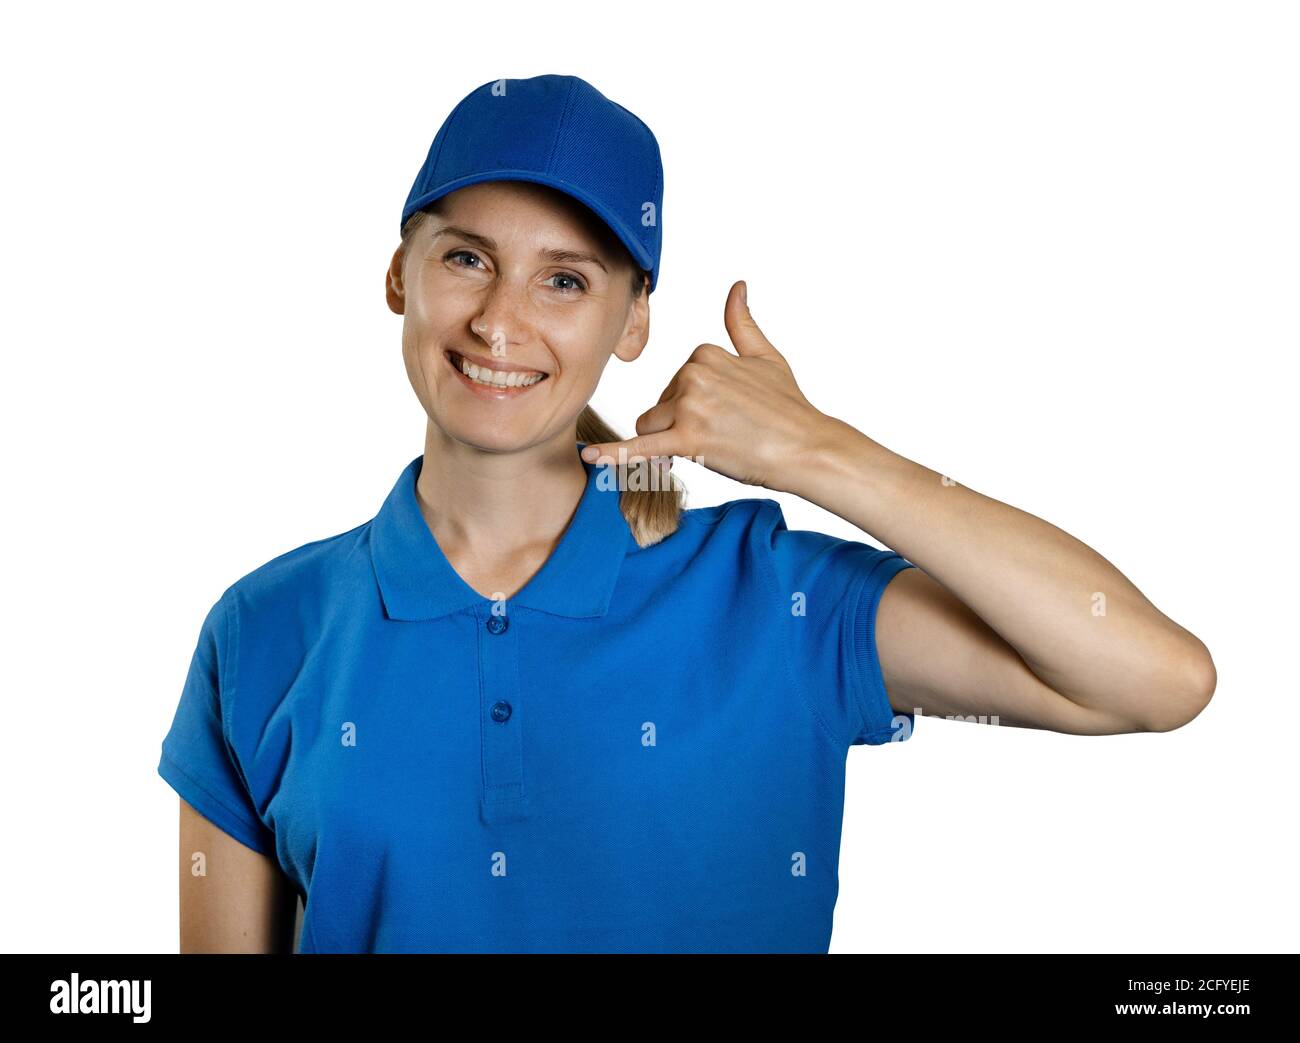 secteur du service de soutien - jeune femme souriante en uniforme bleu montrant le geste de contact d'appel. isolée sur fond blanc Banque D'Images